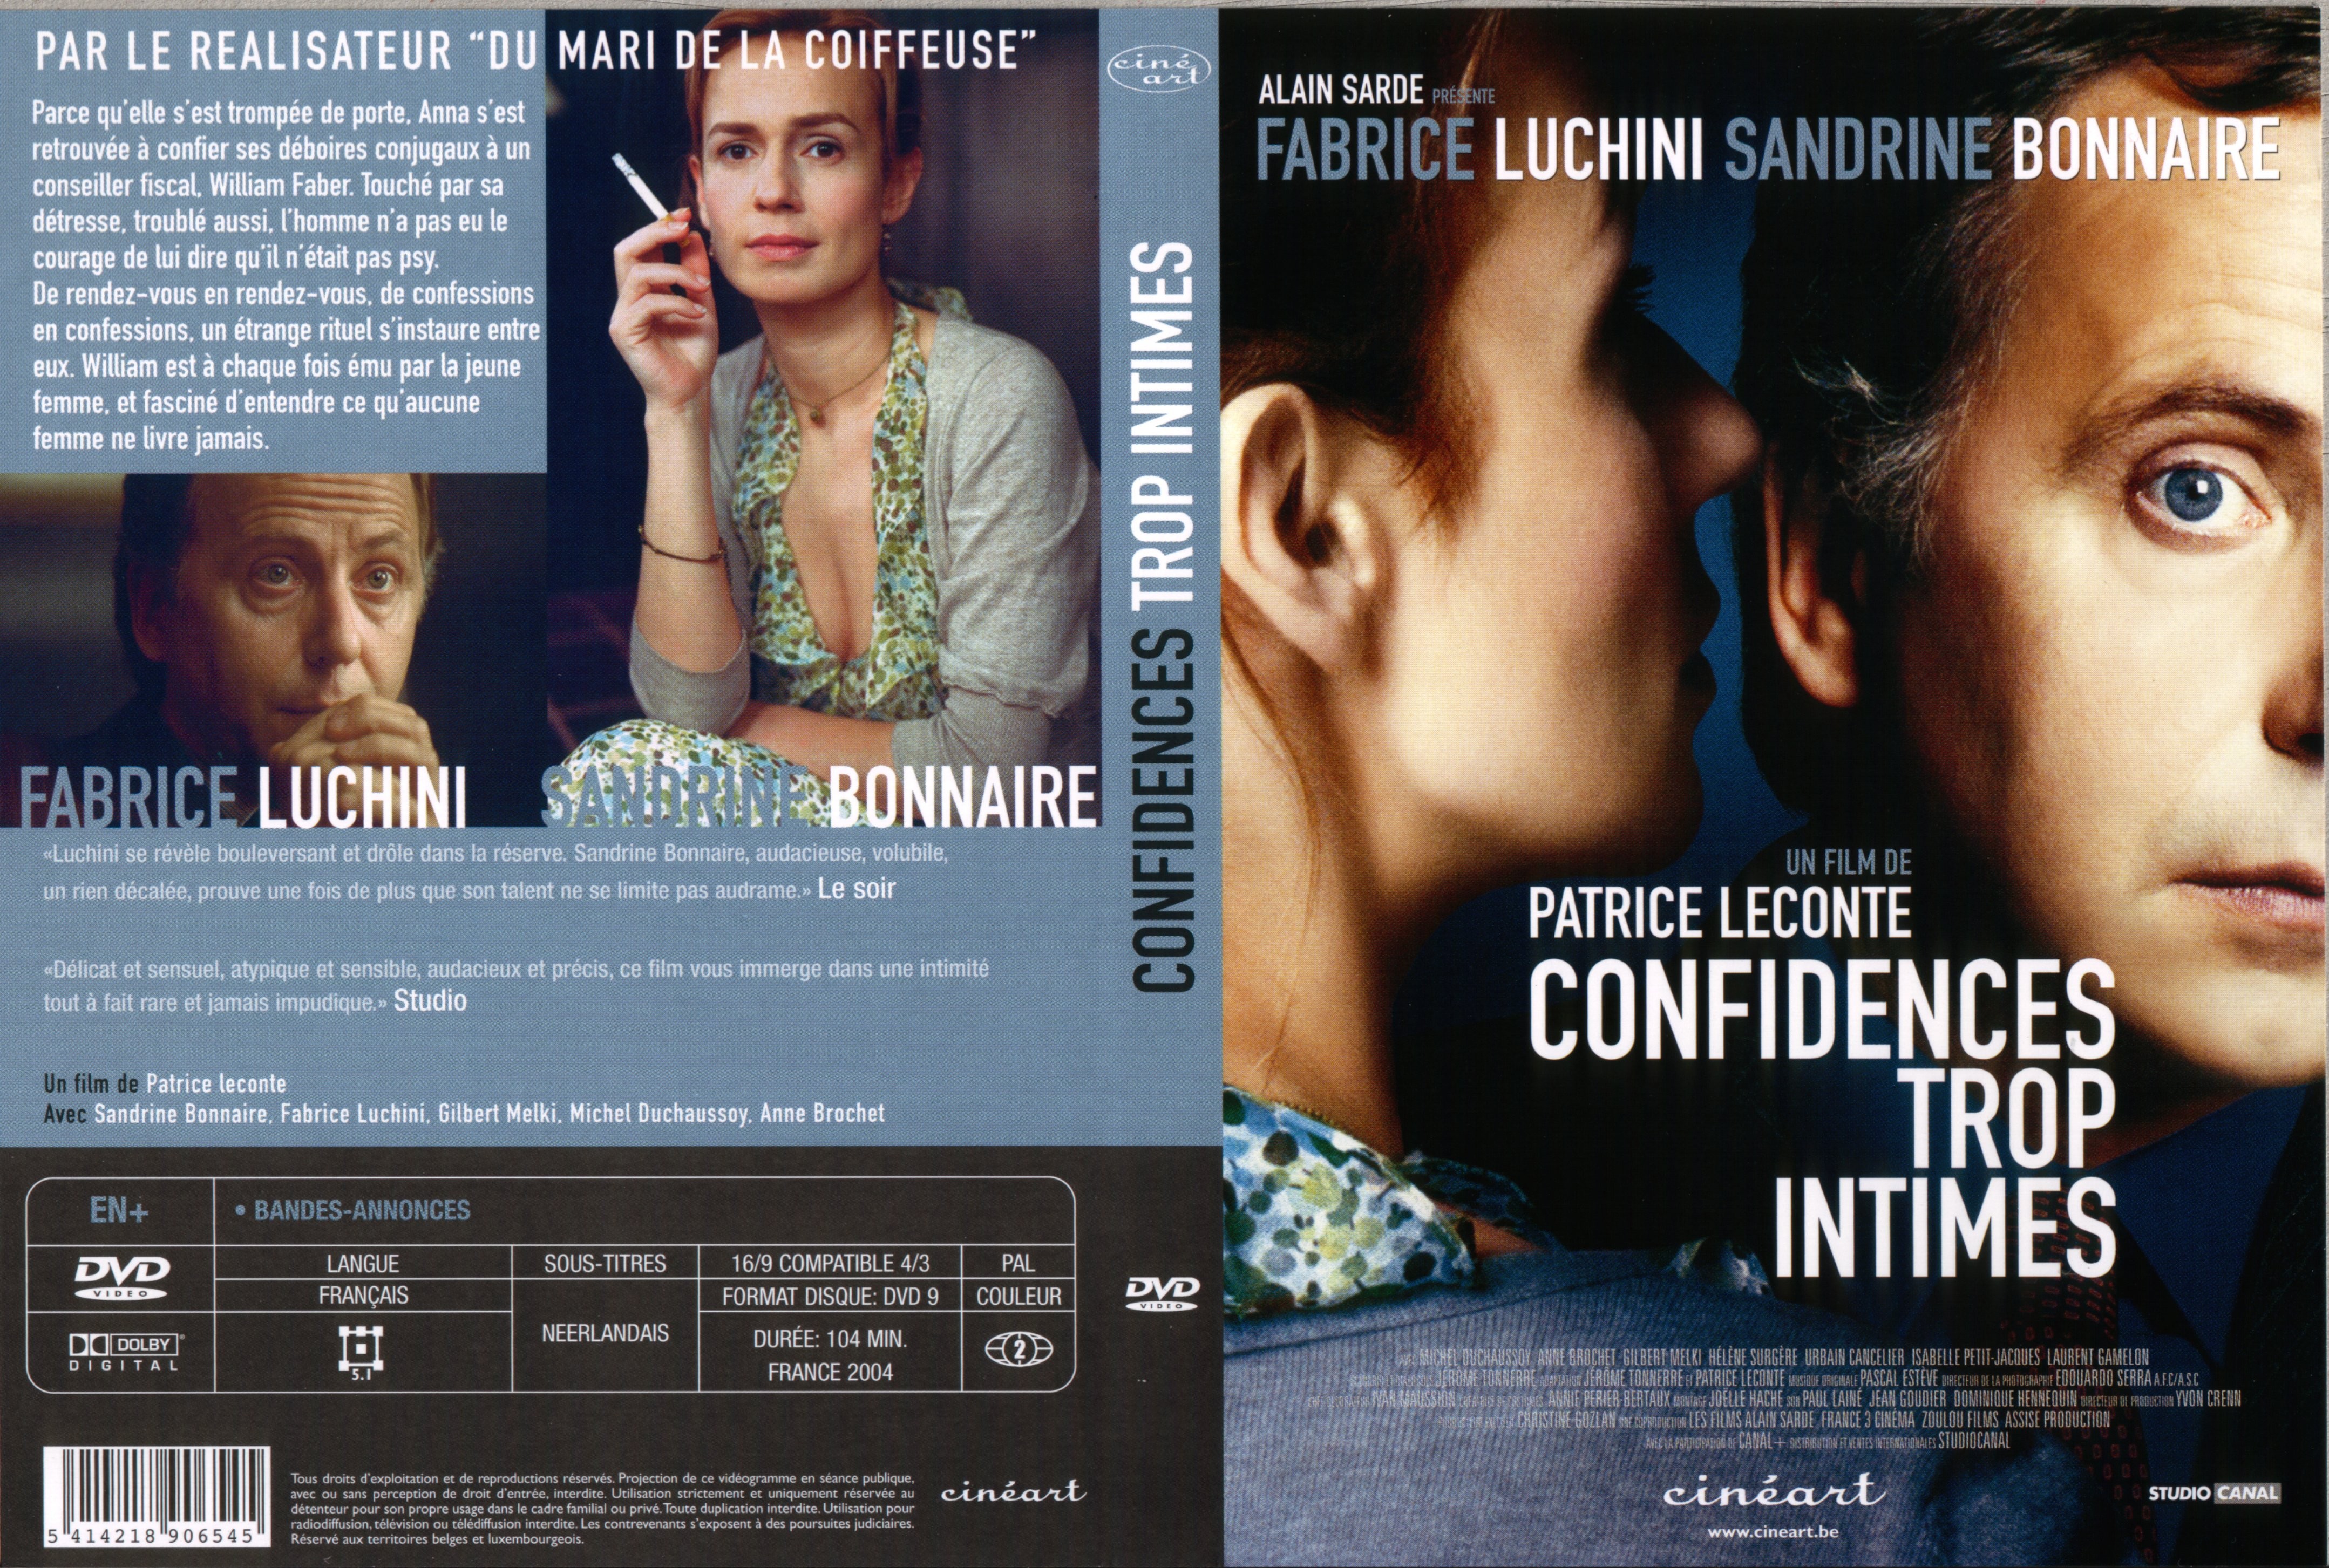 Jaquette DVD Confidences trop intimes v2